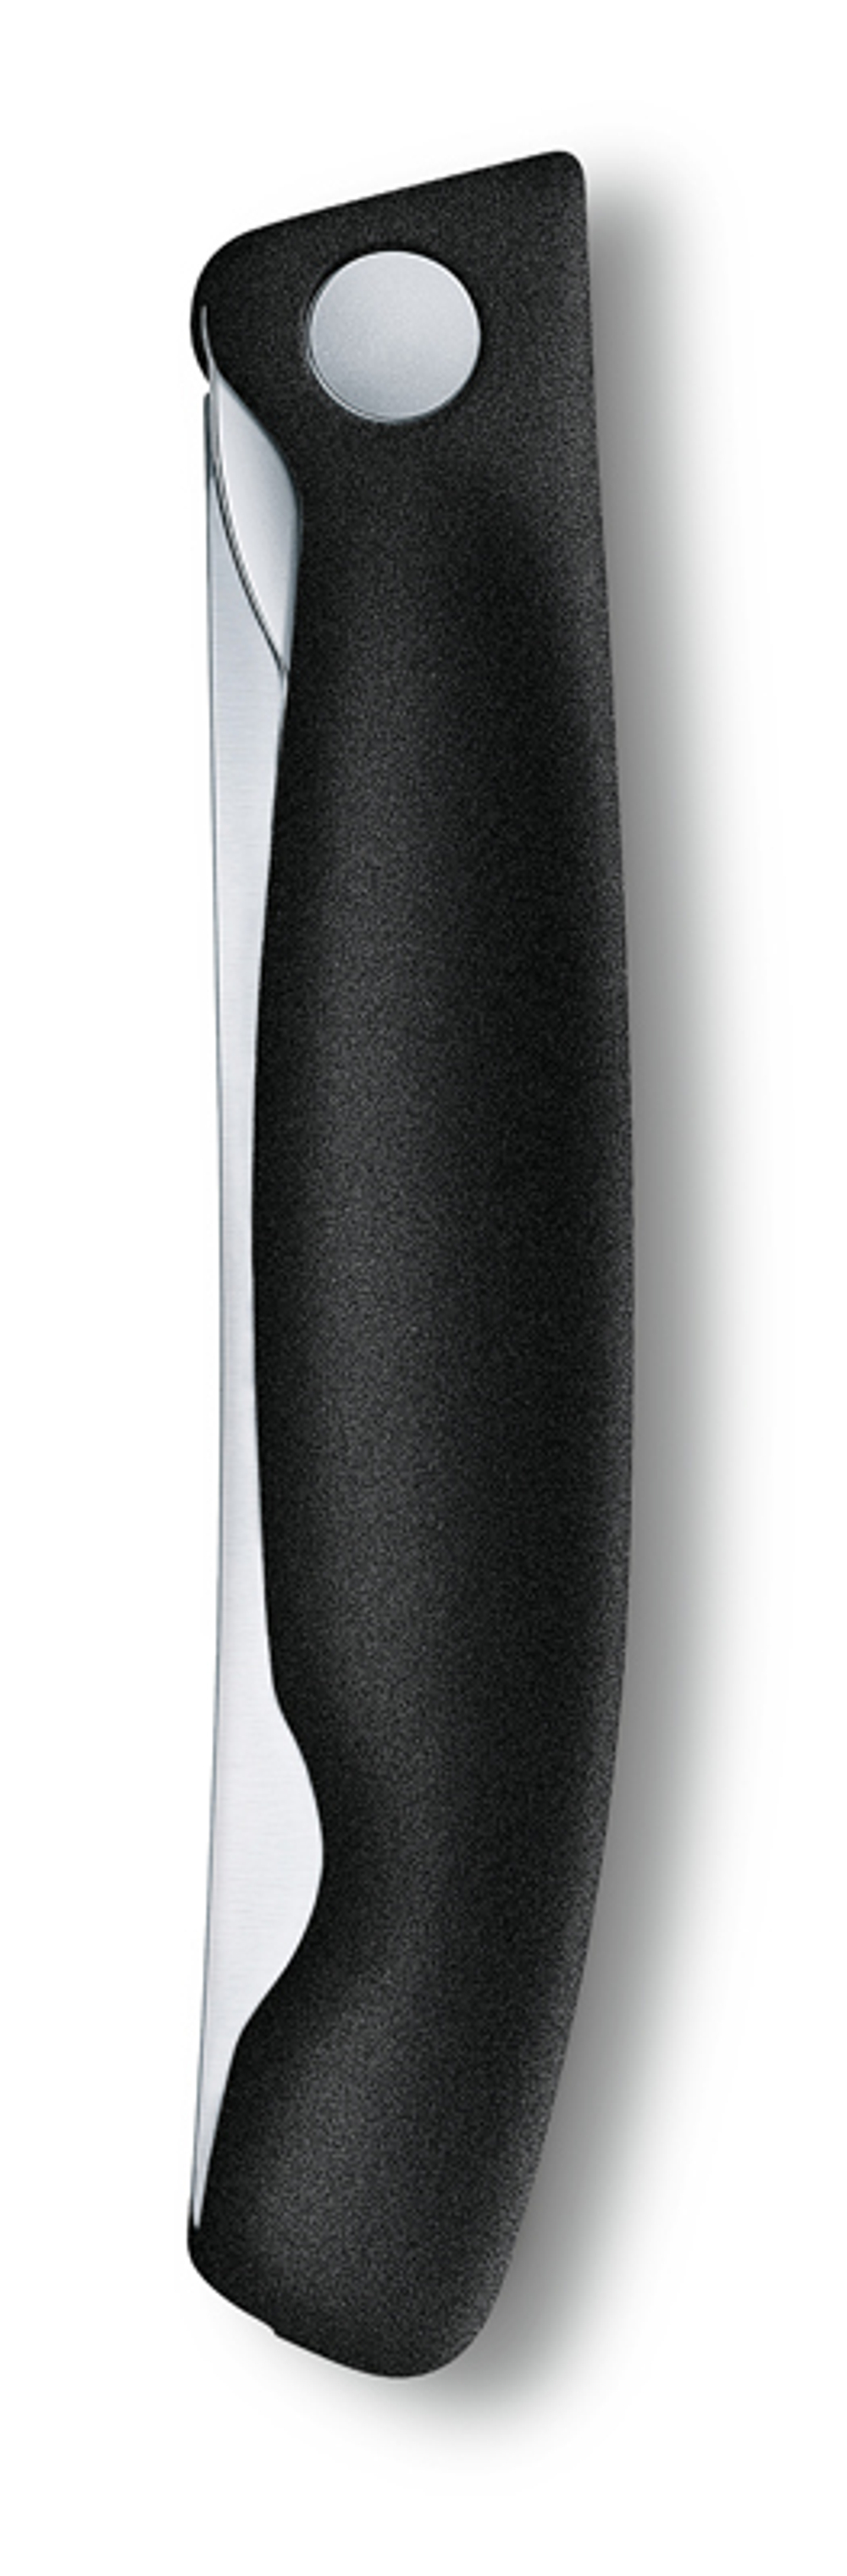 Нож для овощей SwissClassic чёрный складной 11 см с волнистой заточкой VICTORINOX 6.7833.FB